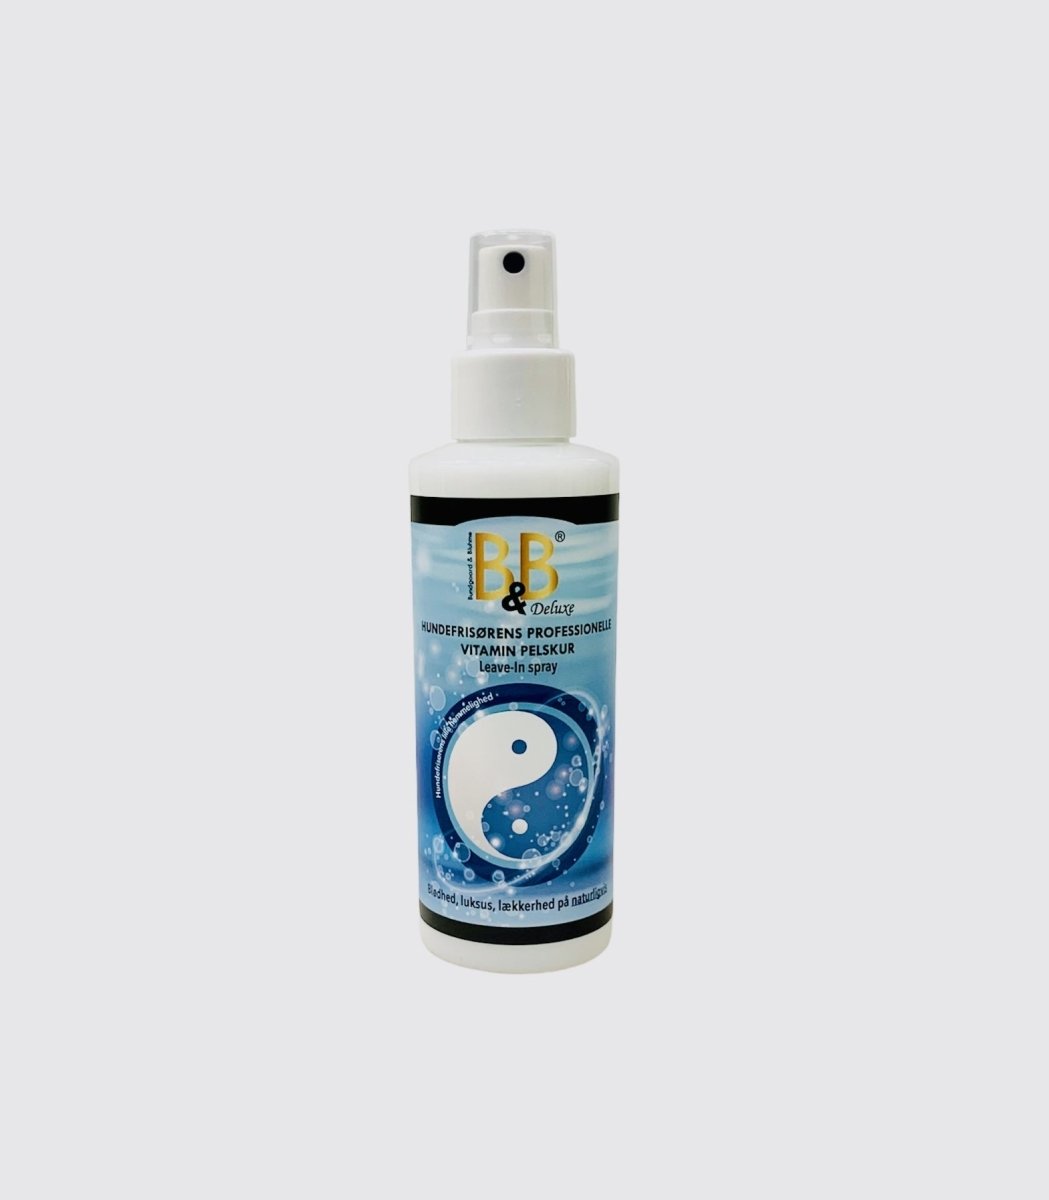 Billede af B&B Leave-In spray Vitamin pelskur